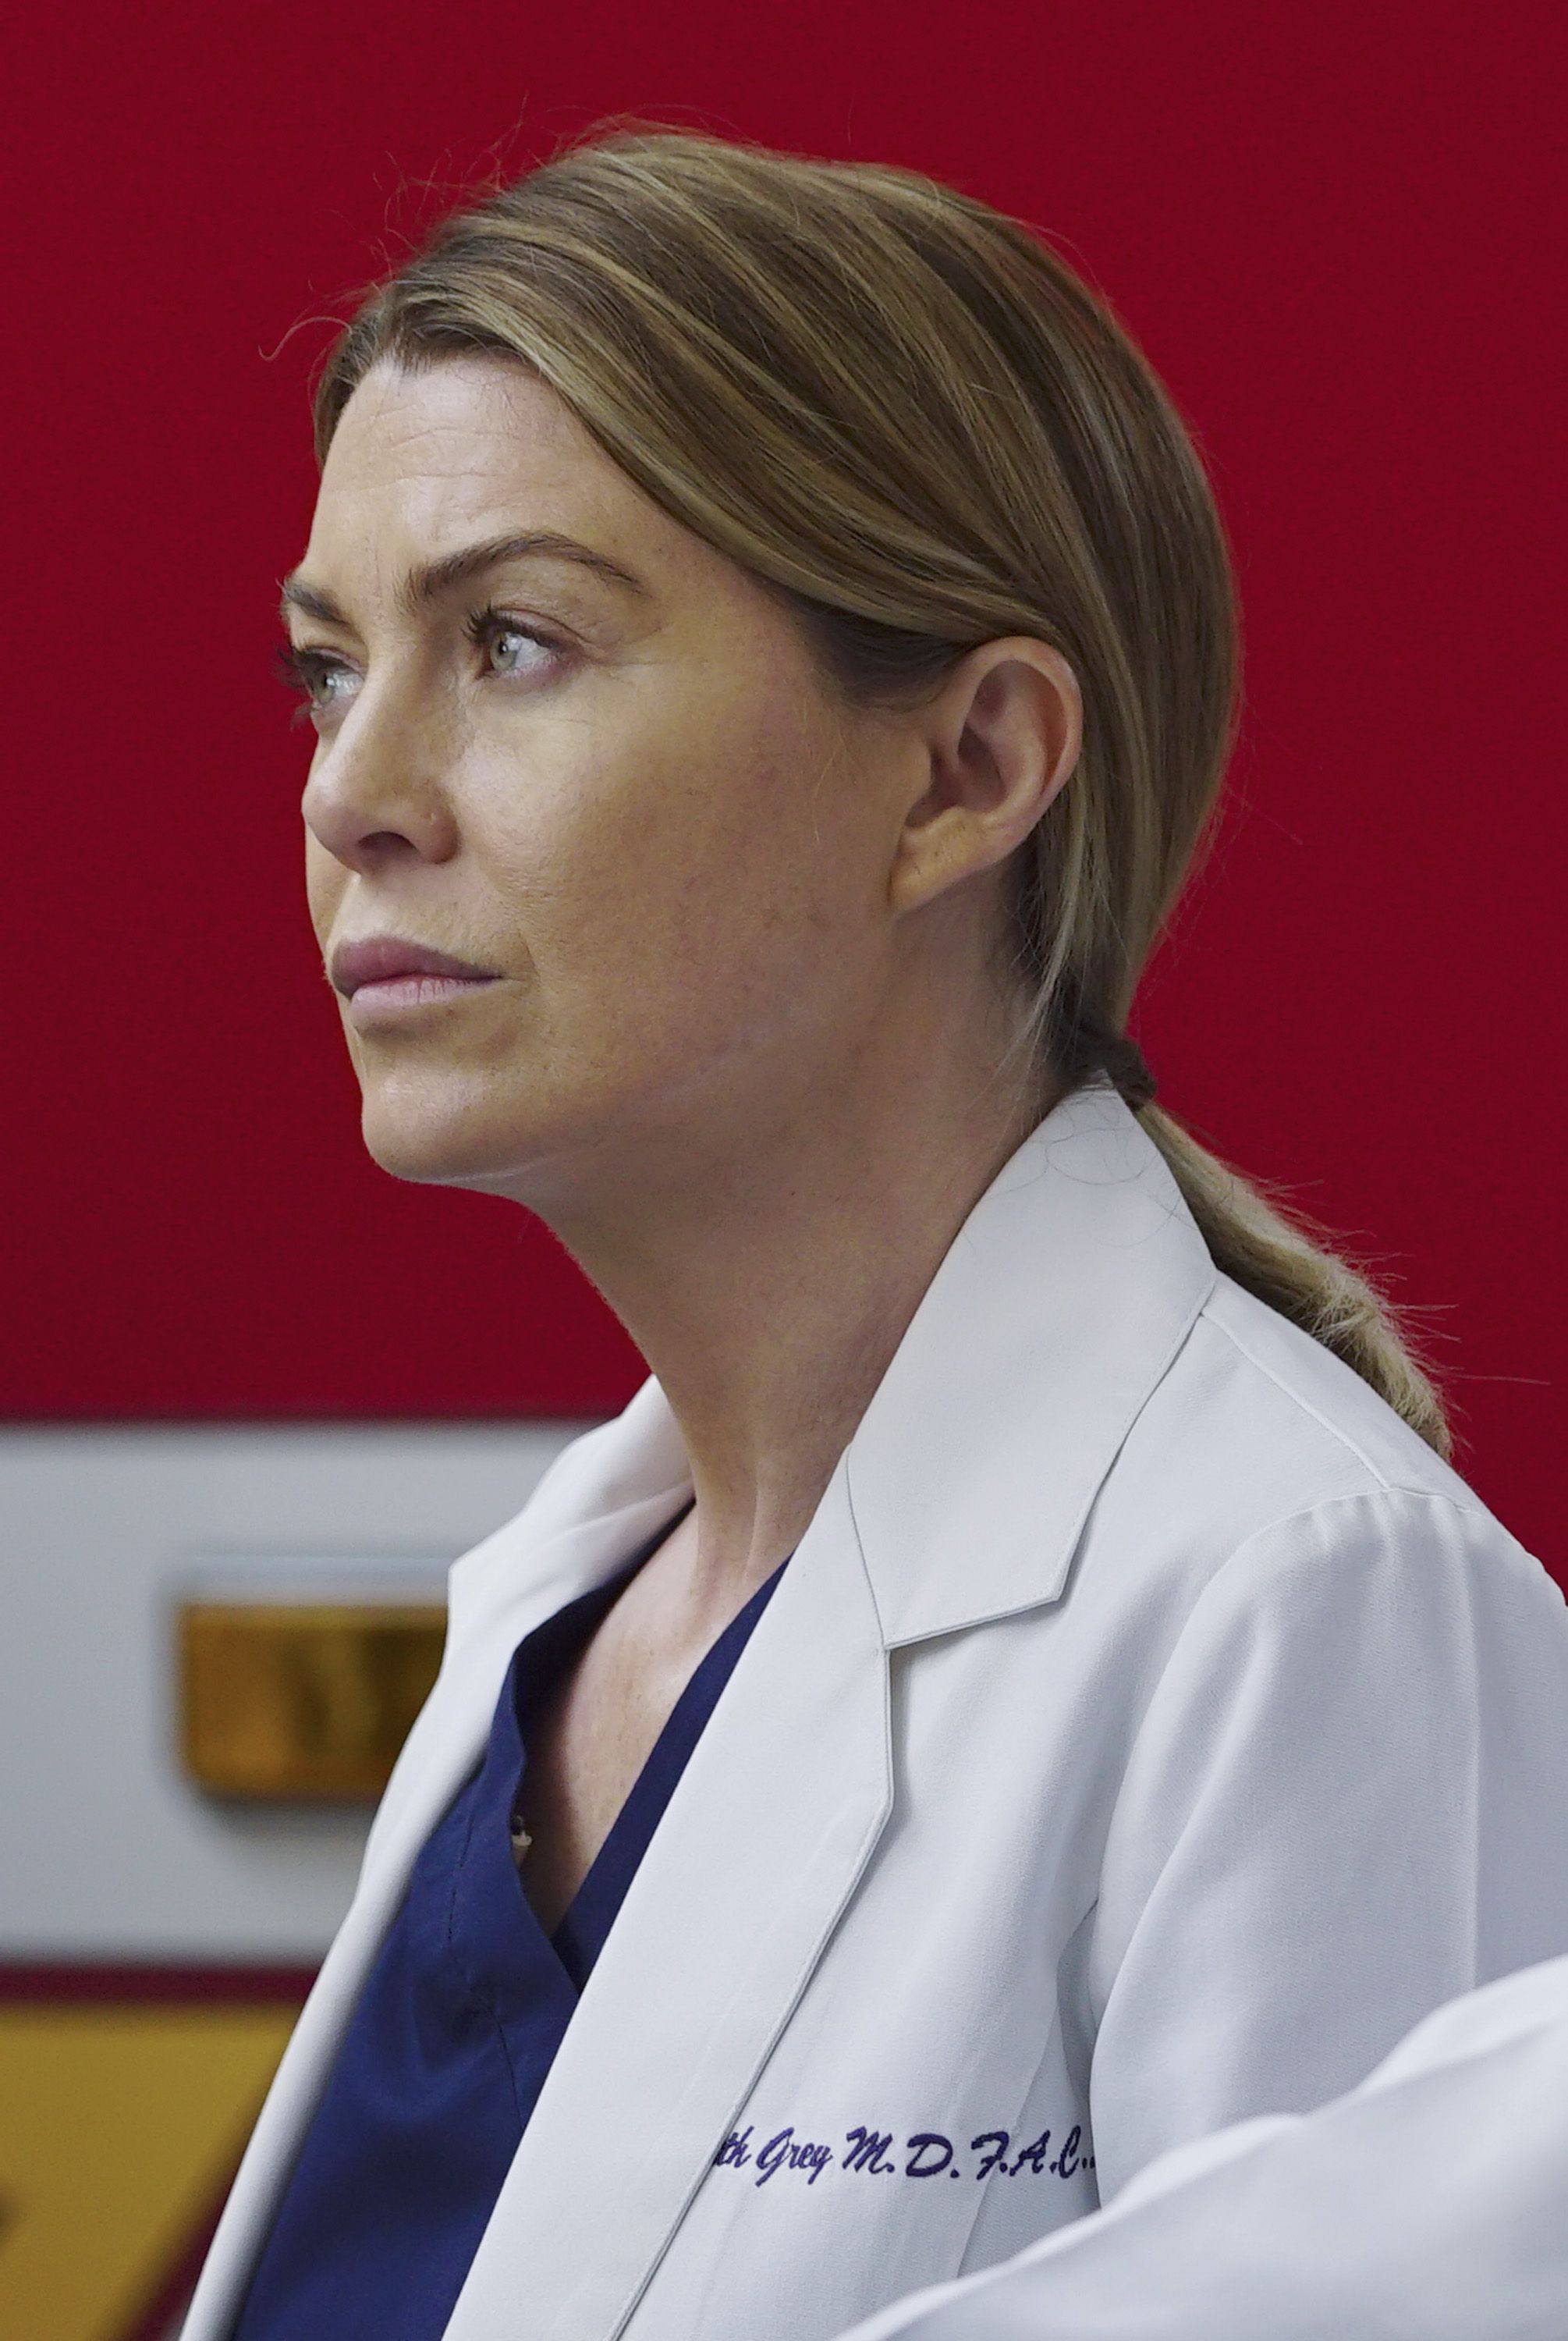 Meting Medisch niet voldoende Grey's Anatomy Season 12 Episode 23 Recap & Review - At Last